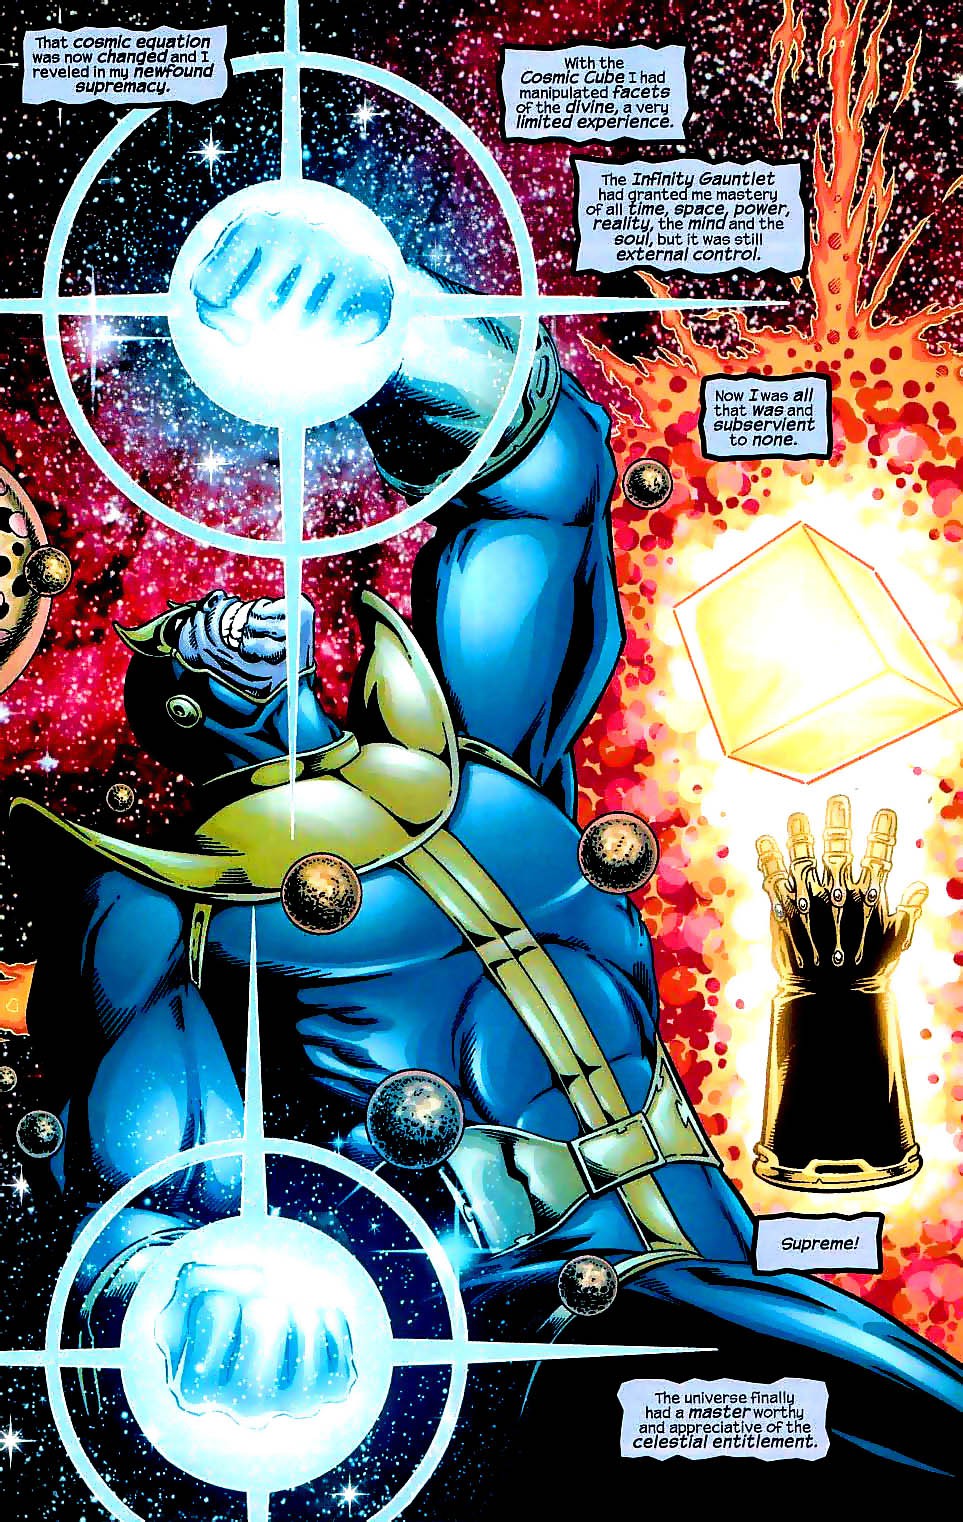 Heart of the Universe, bảo vật vũ trụ giúp Thanos trở thành Chúa Trời, sở hữu quyền năng vượt xa Găng Tay Vô Cực - Ảnh 9.